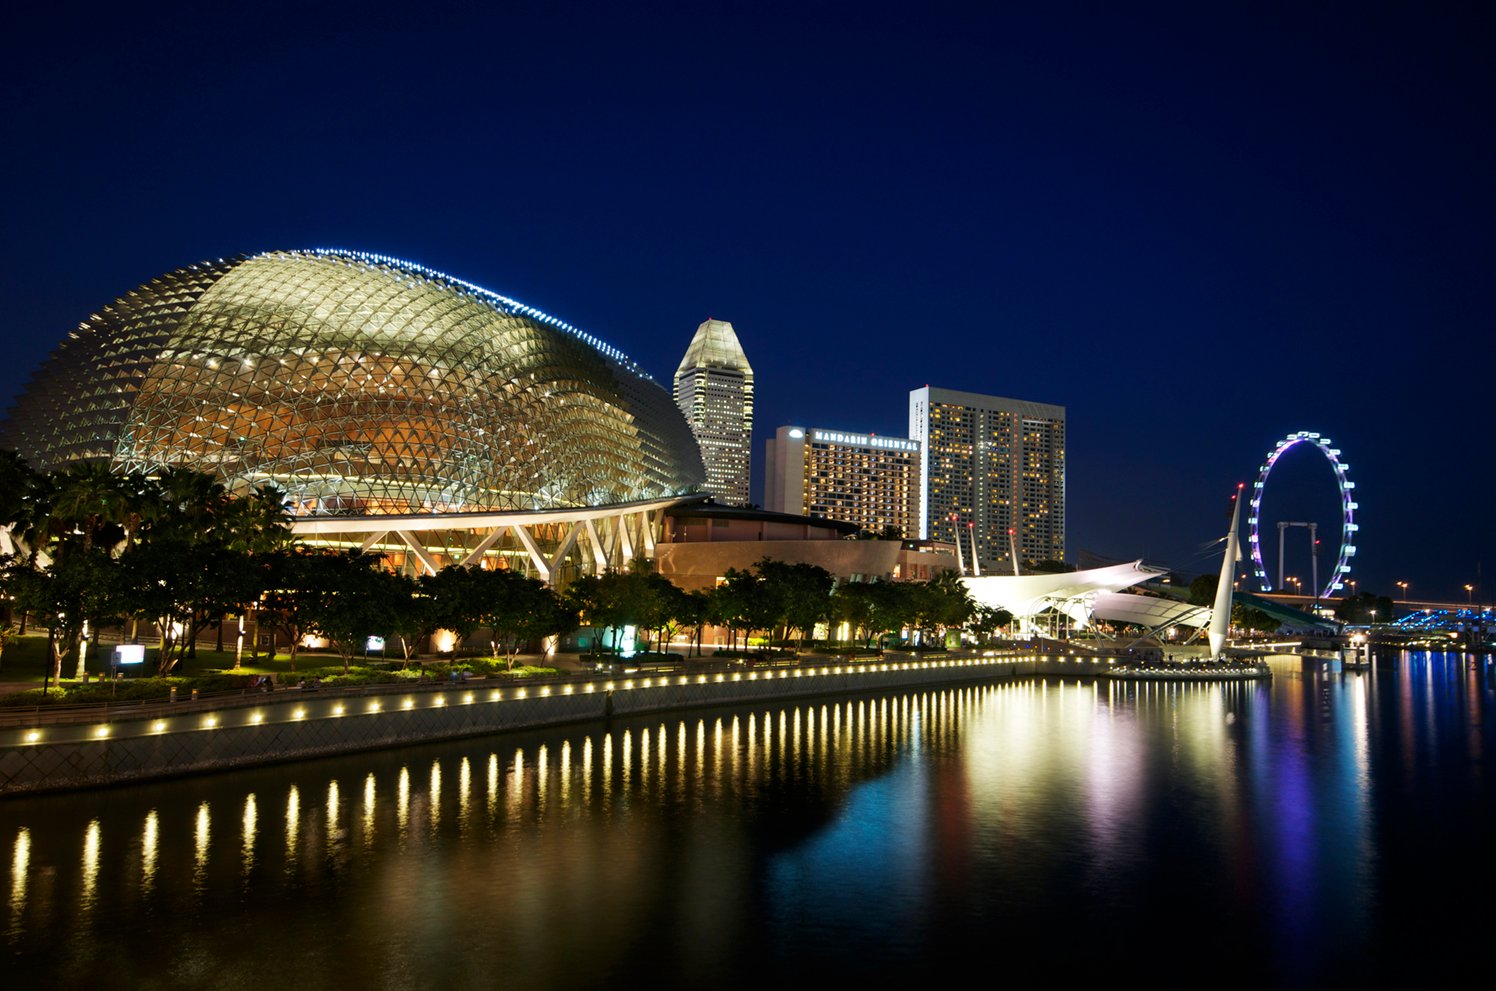 Esplanade Theatre, Singapore